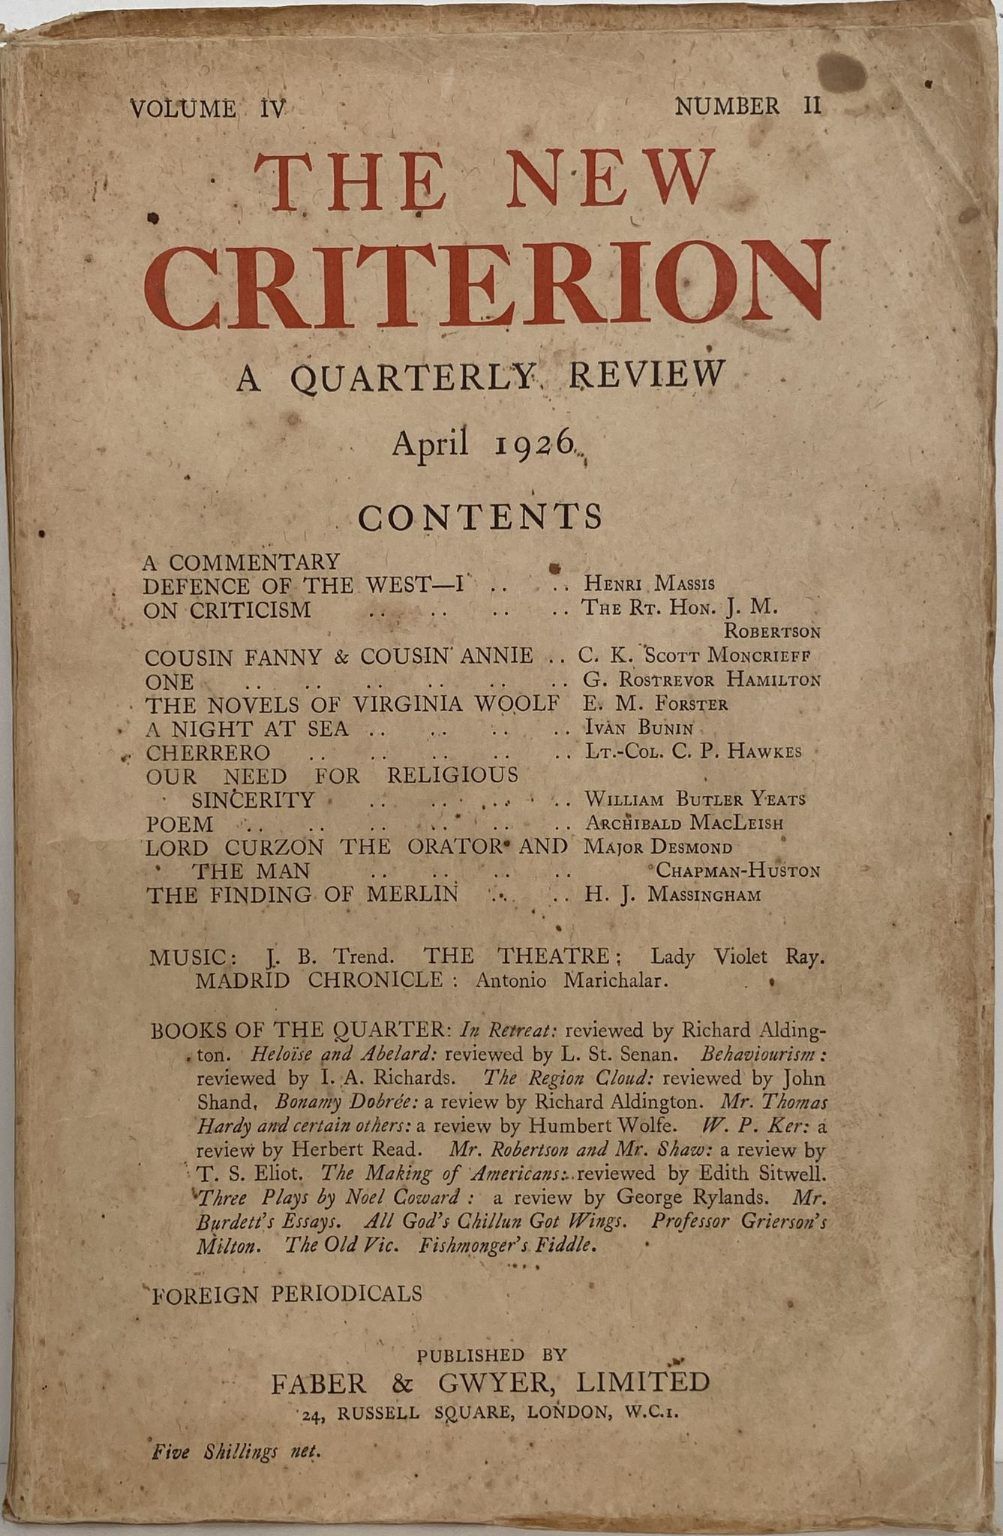 THE NEW CRITERION: A Quarterly Review - Vol. IV, No. I, January 1926